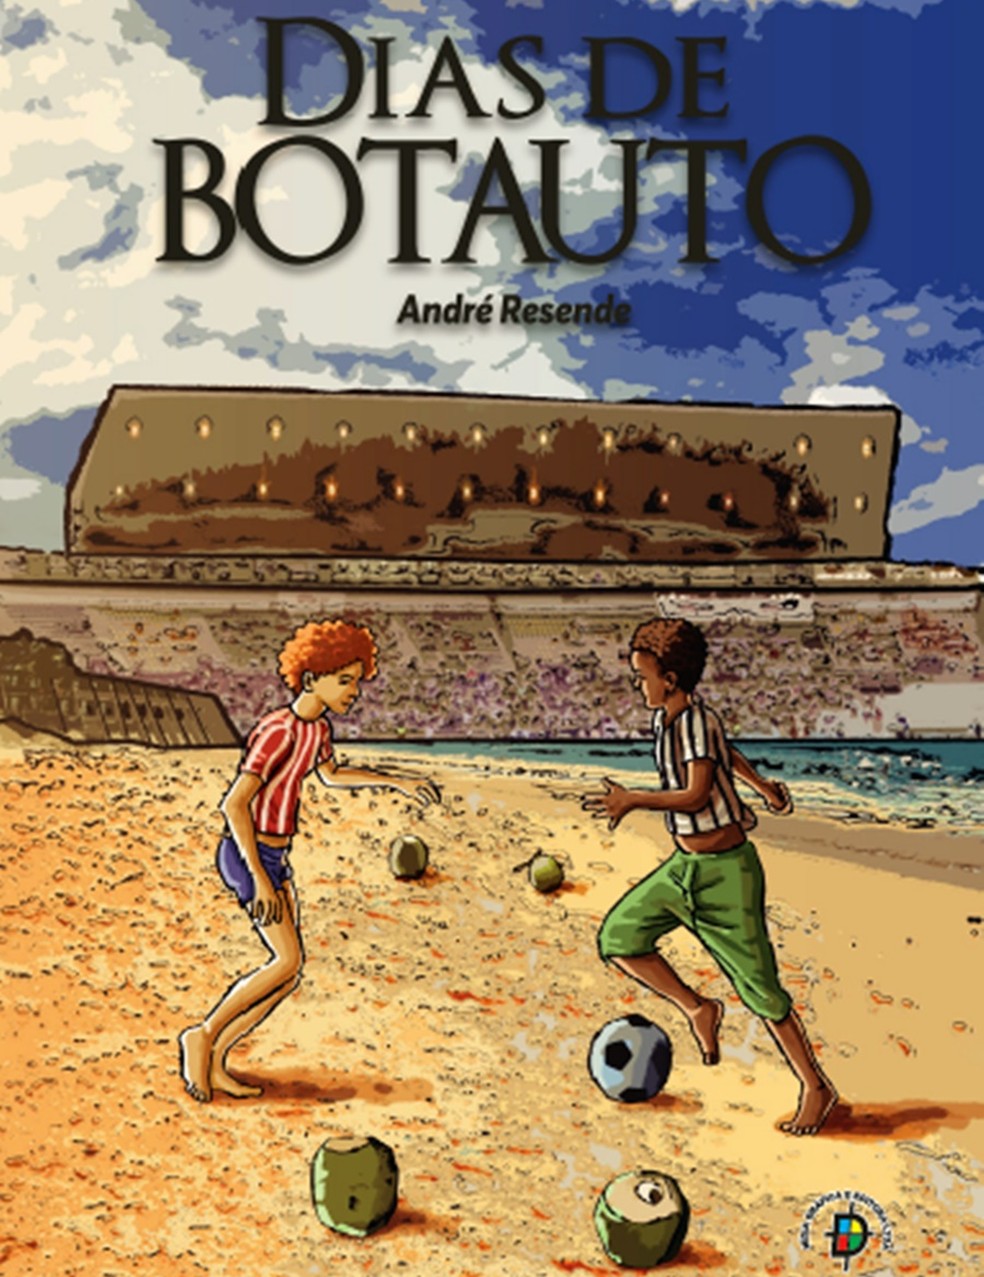 Livro que conta parte da história do clássico de futebol mais antigo da Paraíba, é lançado em João Pessoa. — Foto: Divulgação/André Resende